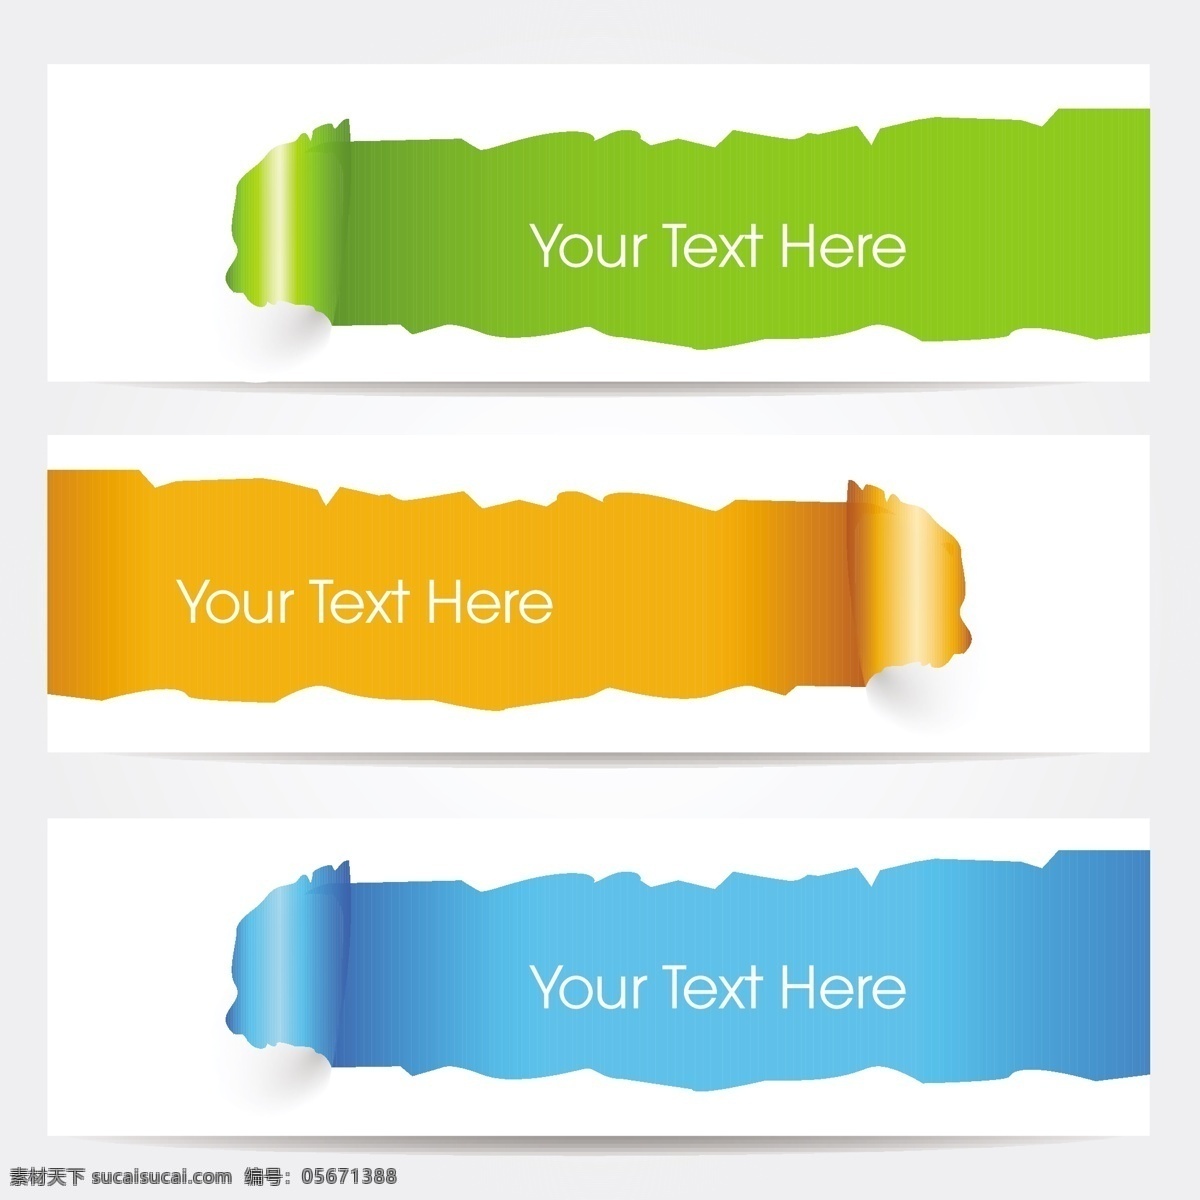 创意横幅广告 网站 标题 绿色 插图 创意设计 彩色 简约 矢量素材 白色